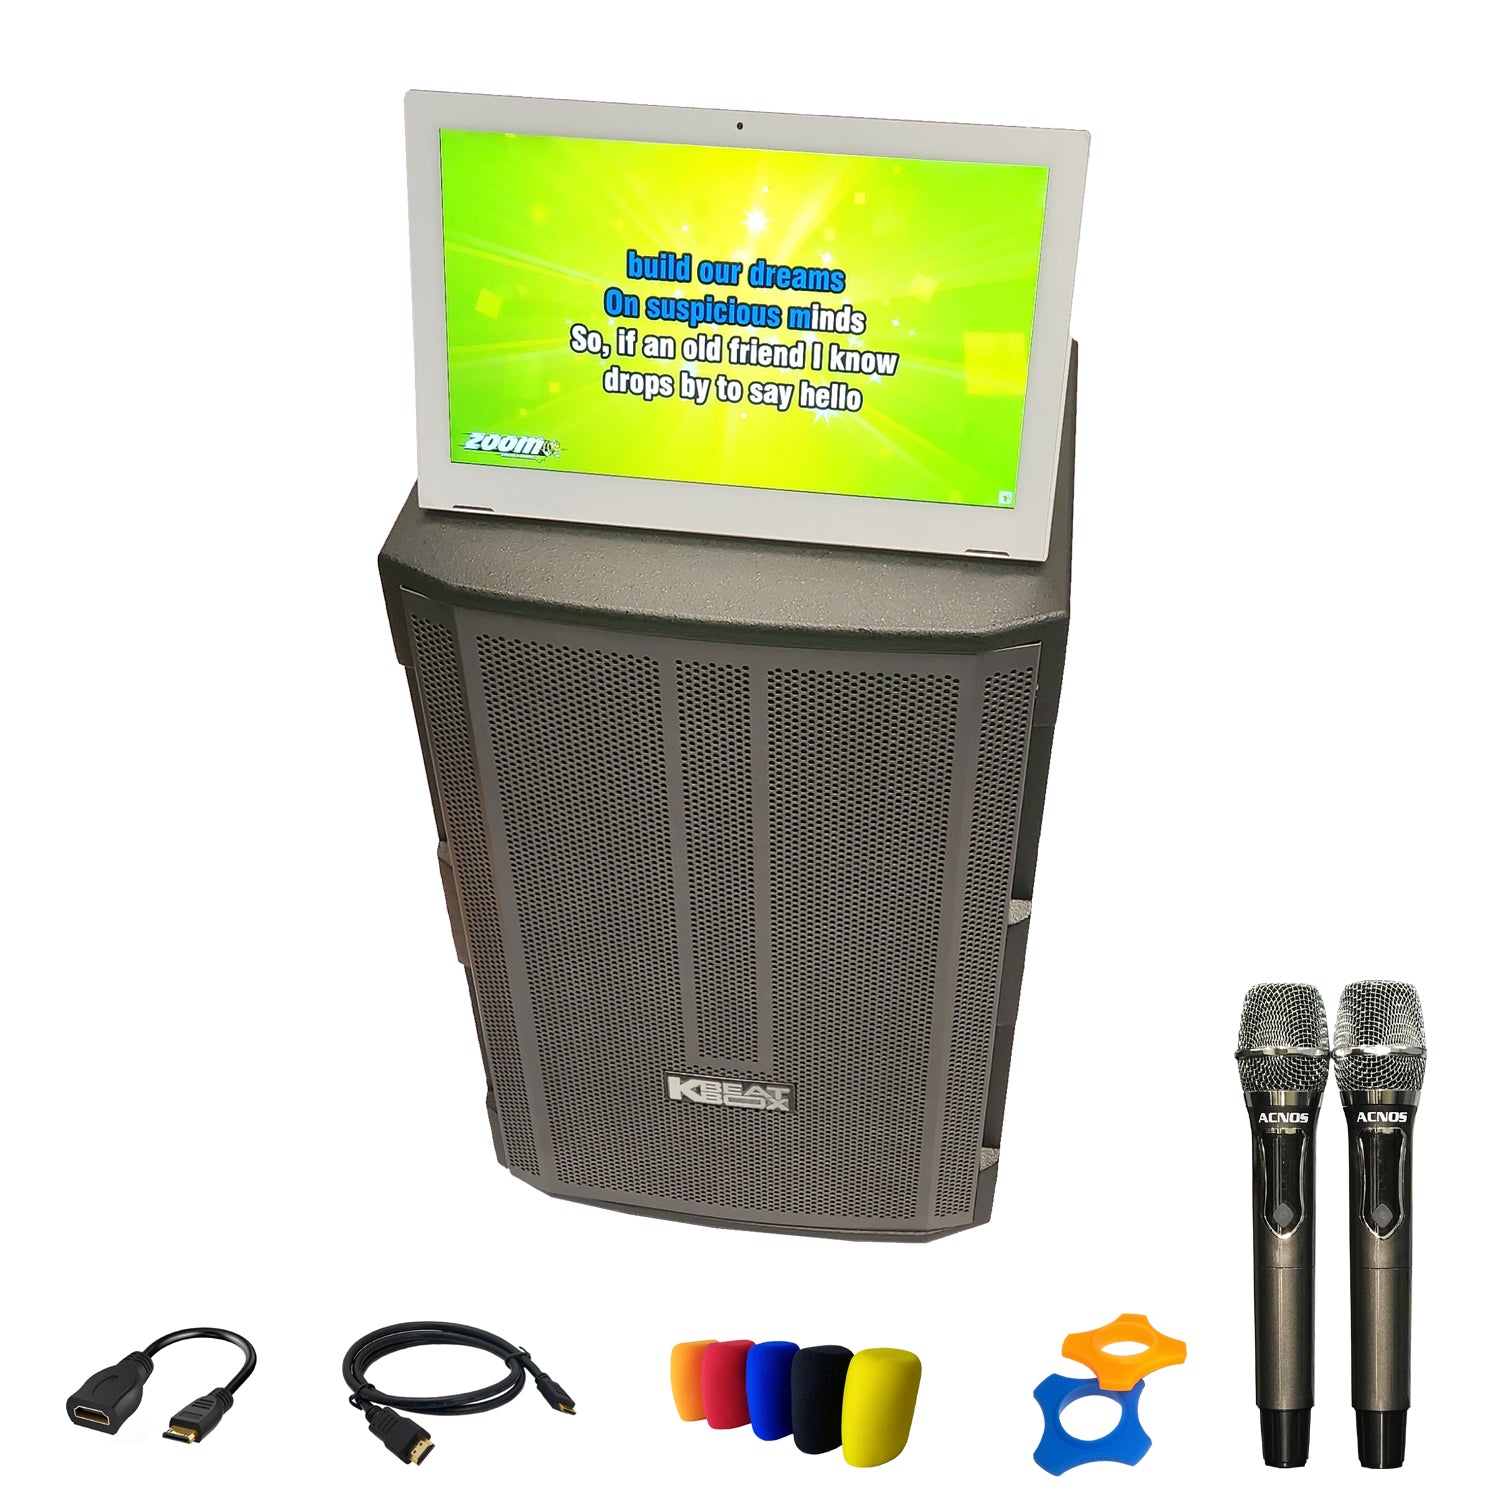 KBeatBox CBX-150G + KTV 15.6" Touch Screen (Package Deal)